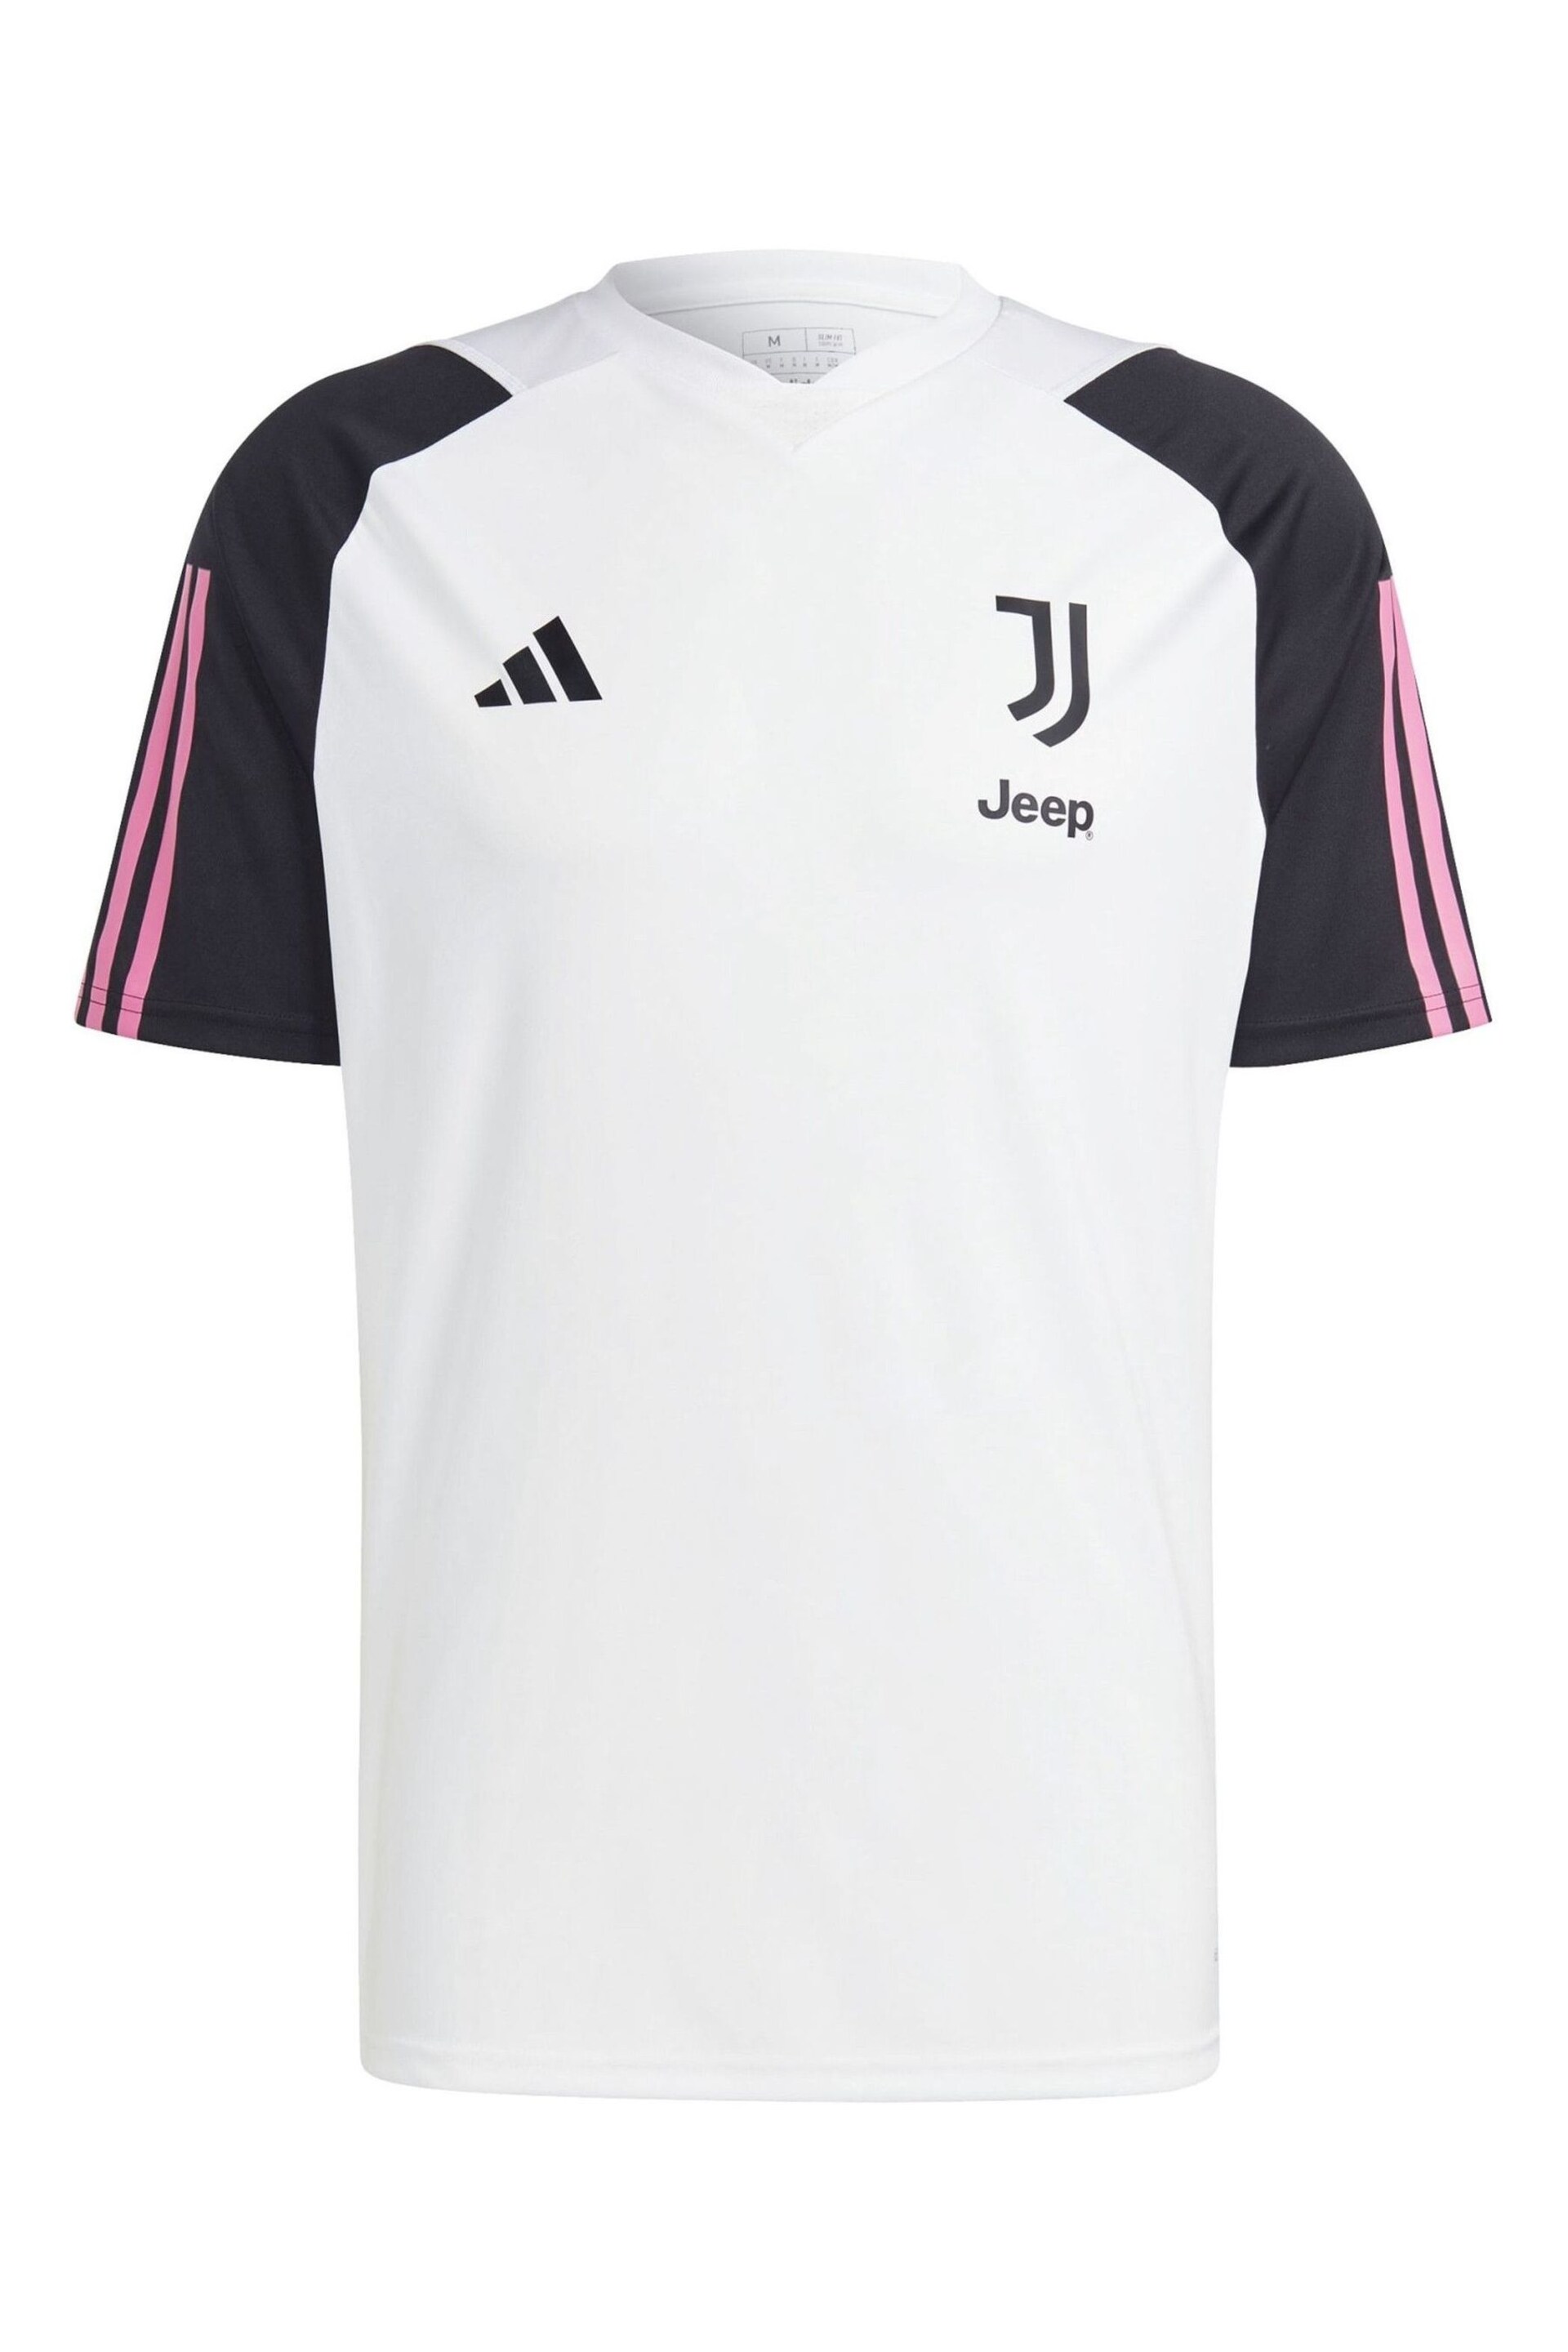 adidas White Juventus Training Jersey - Image 1 of 2